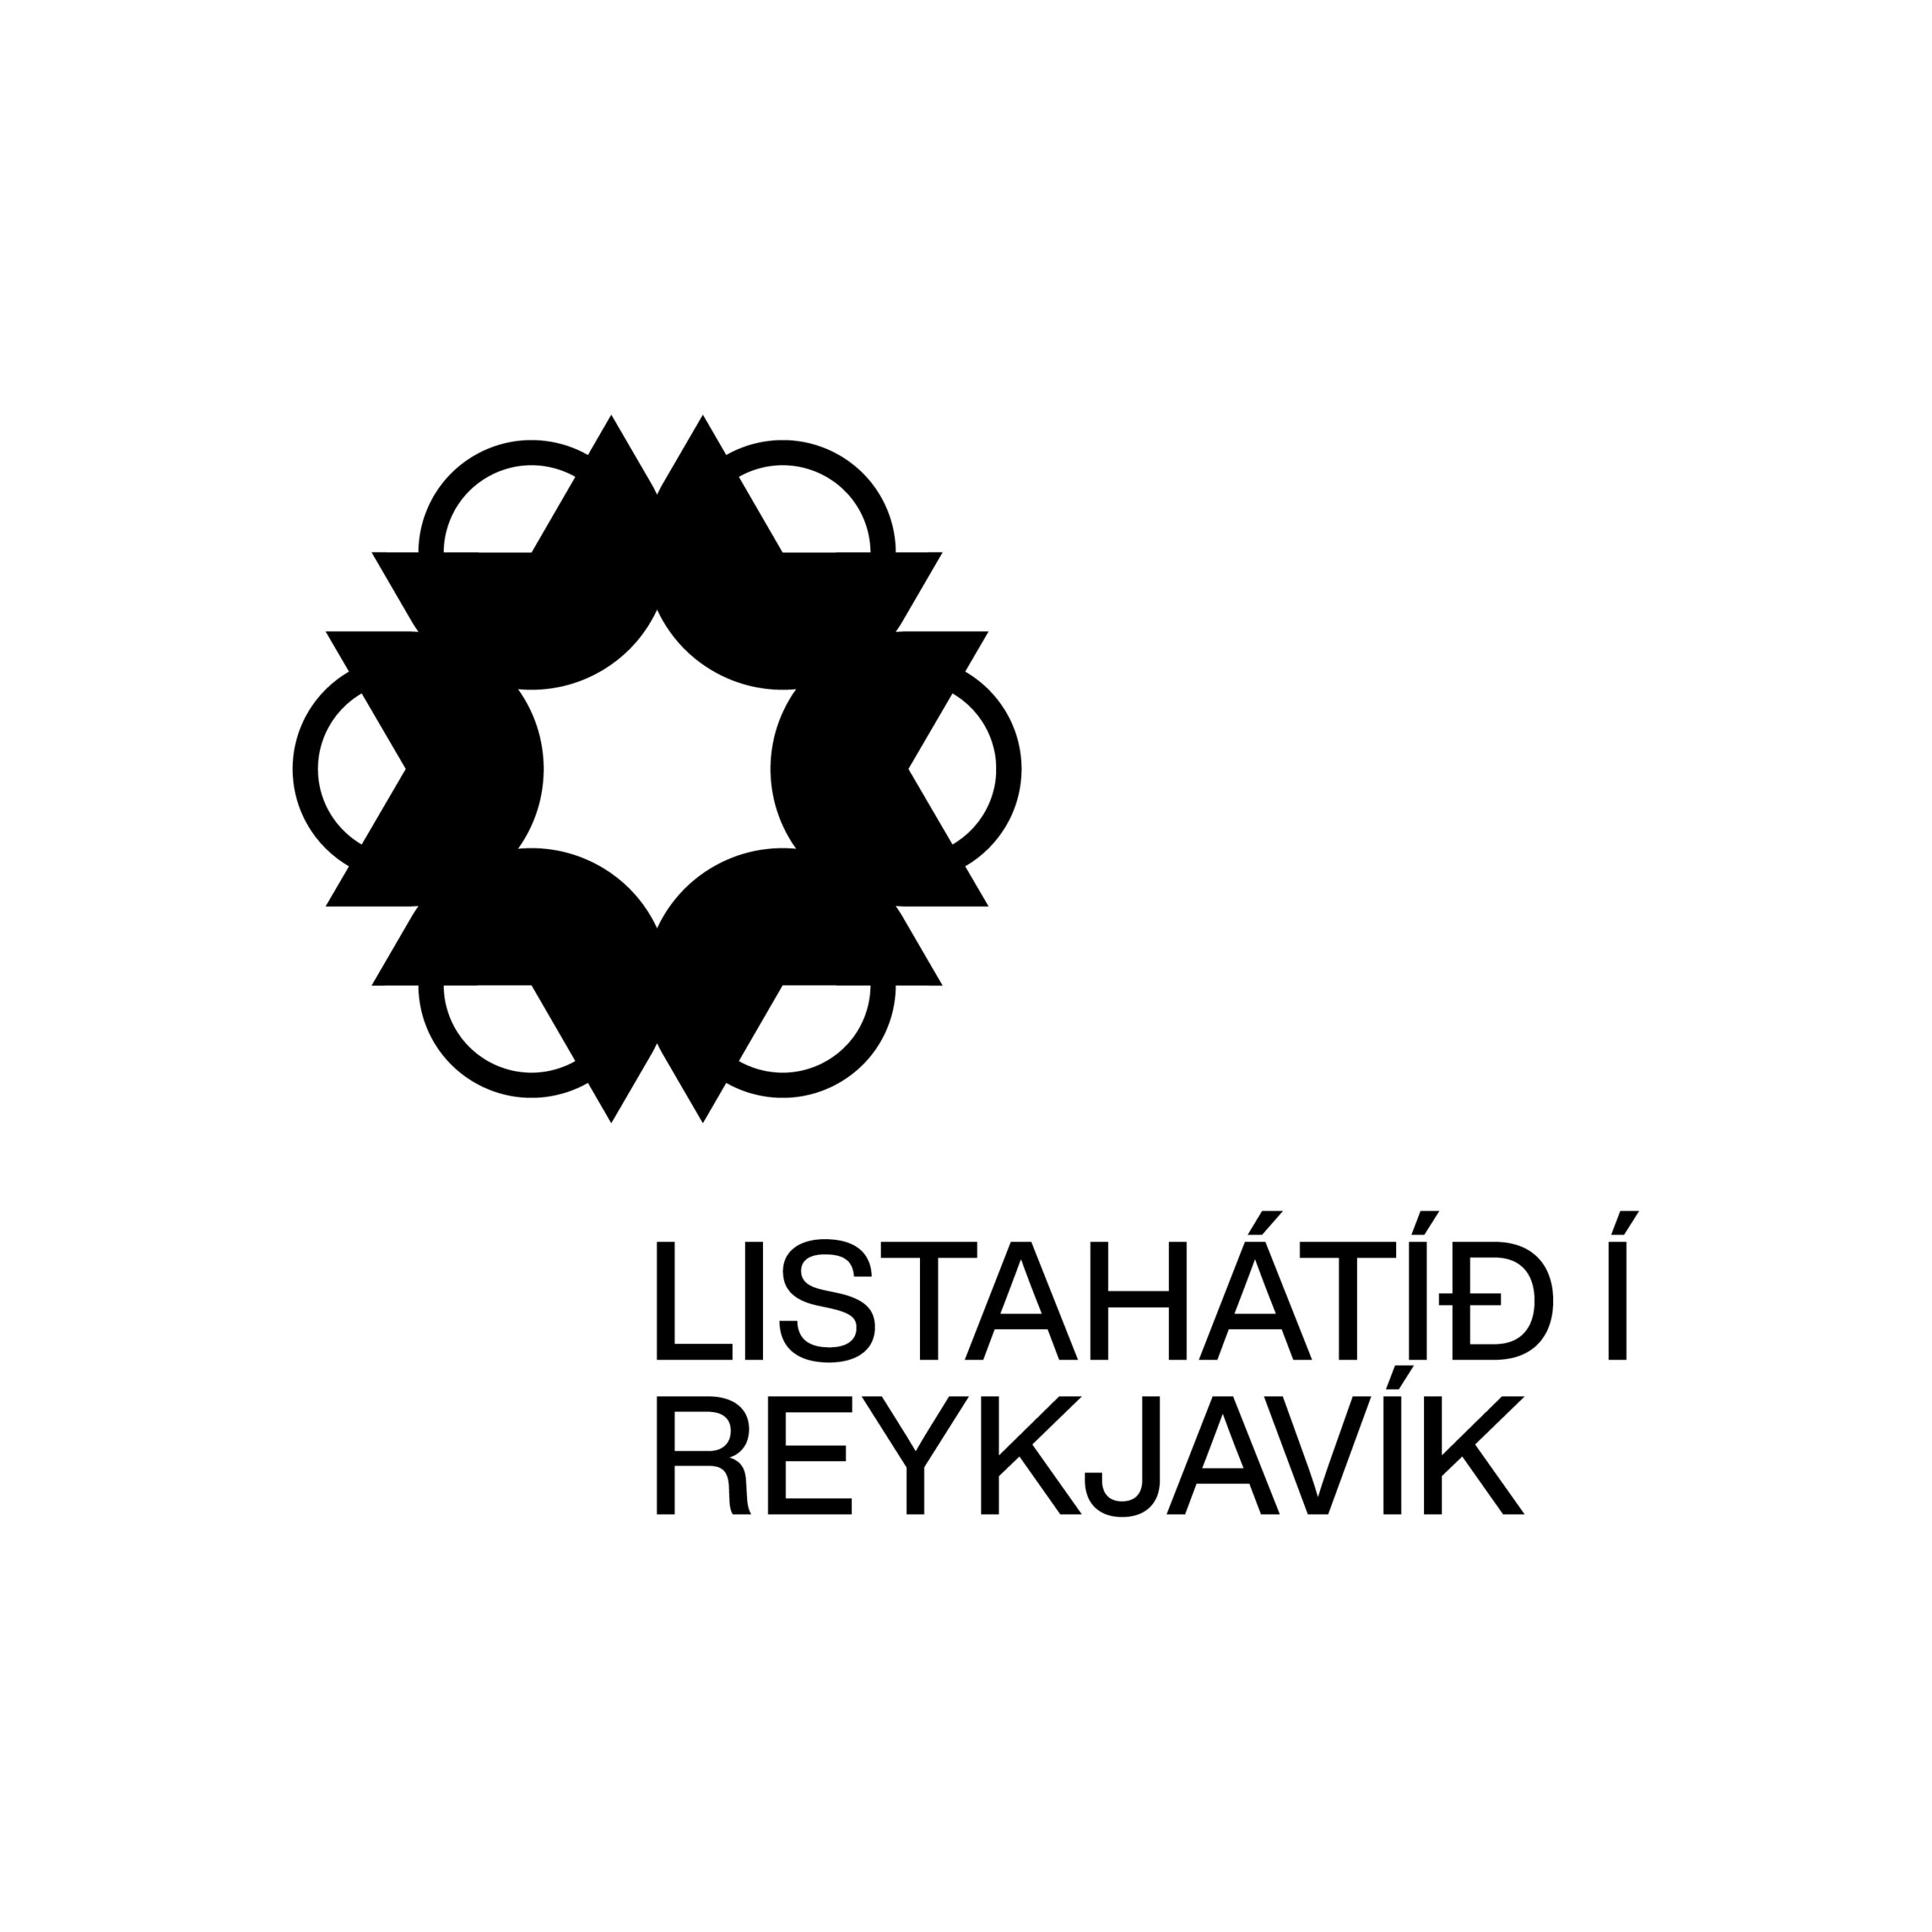 Merki Listahátíðar í Reykjavík